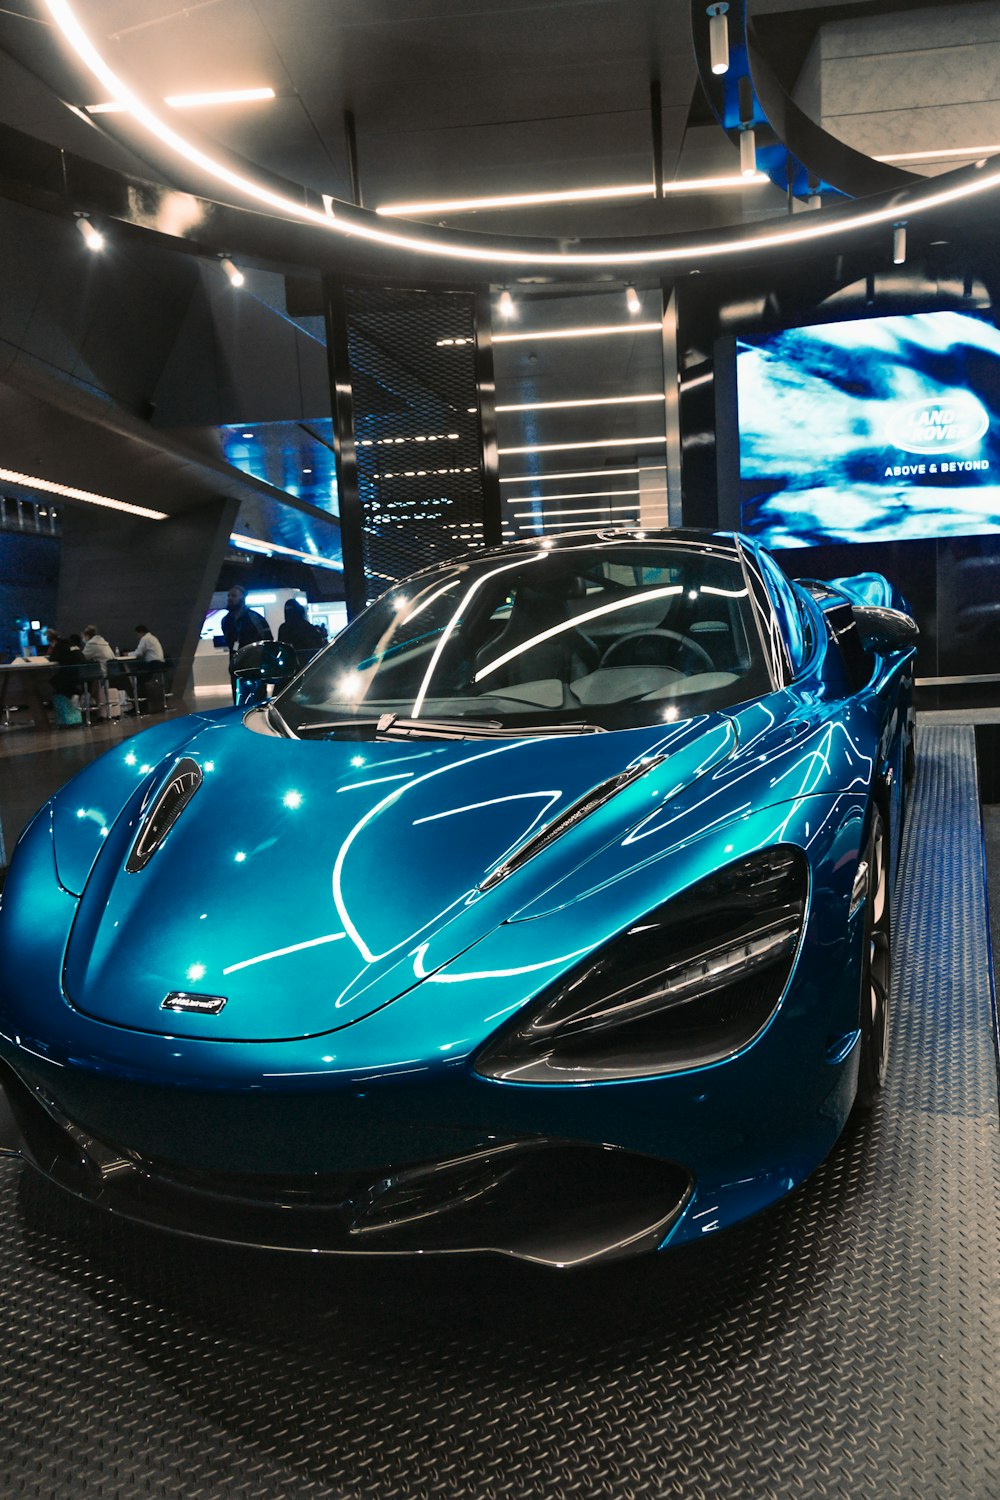 Ein blau glänzender Sportwagen im Showroom